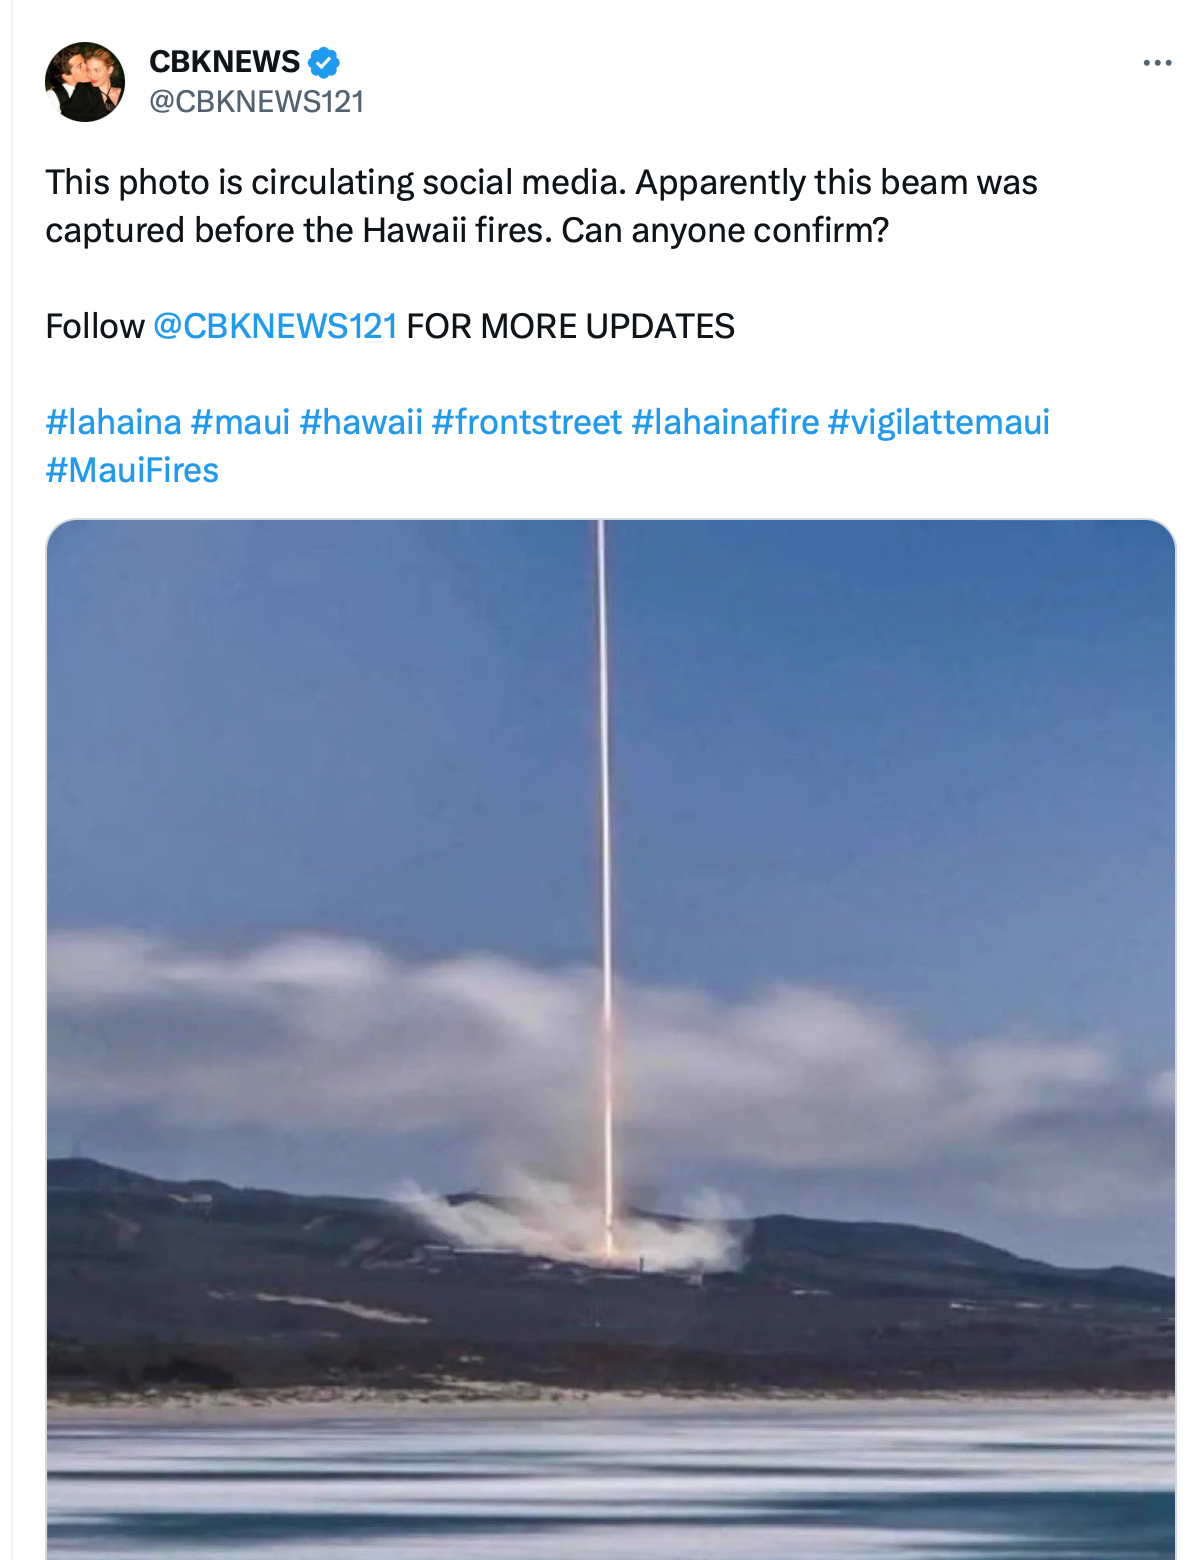 Esta imagen que se está relacionando con los incendios forestales de Maui fue tomada en 2019 en un lanzamiento de SpaceX en la Base de la Fuerza Aérea Vandenberg de California, ahora conocida como Base de la Fuerza Espacial